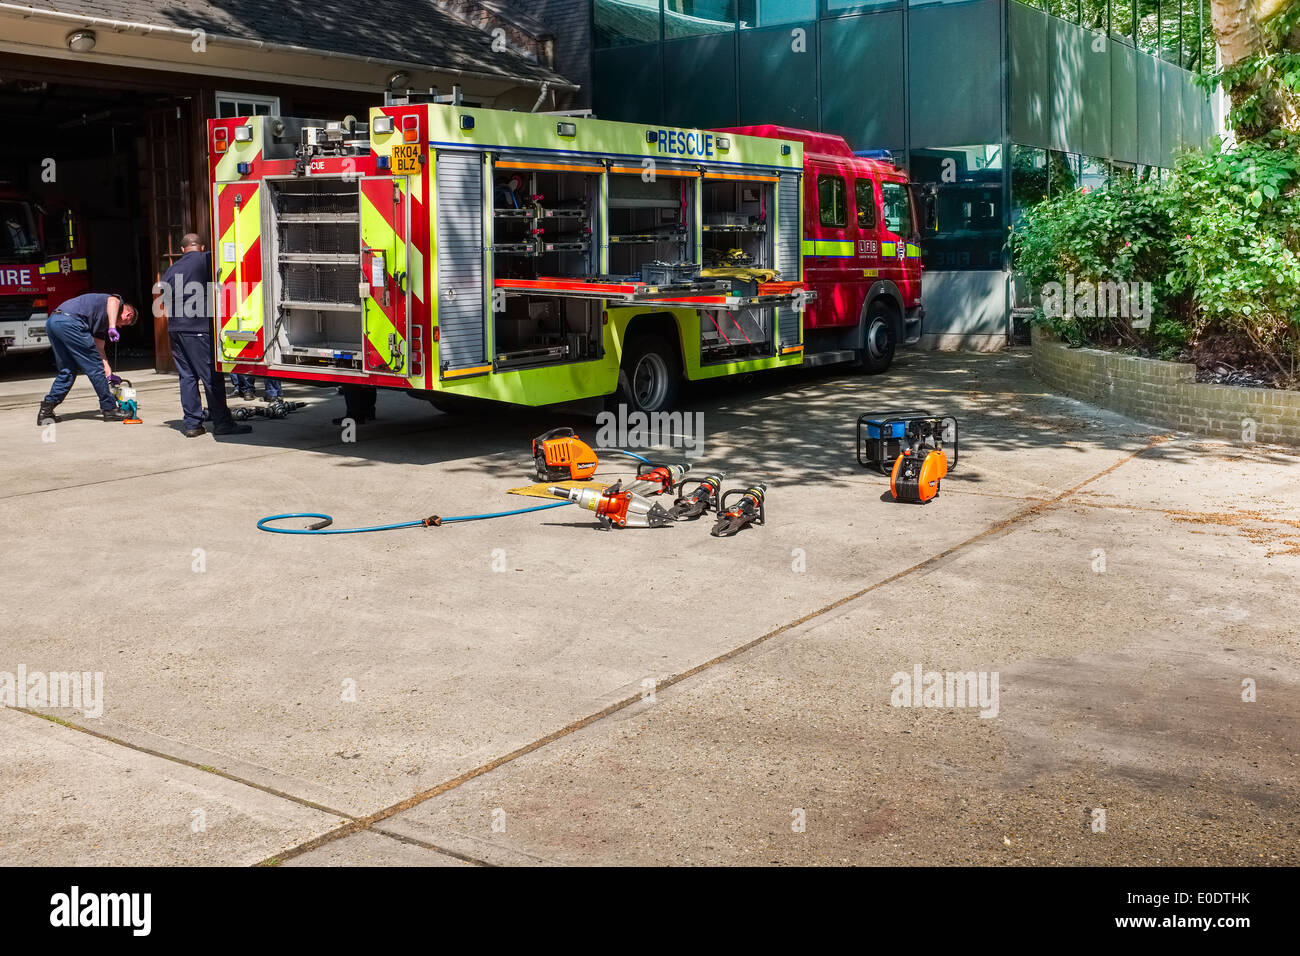 Deux pompiers vérifier l'équipement. London Fire Brigade, Euston Road Station, Angleterre, britannique, Grande-Bretagne, Royaume-Uni, les services d'urgence. Banque D'Images